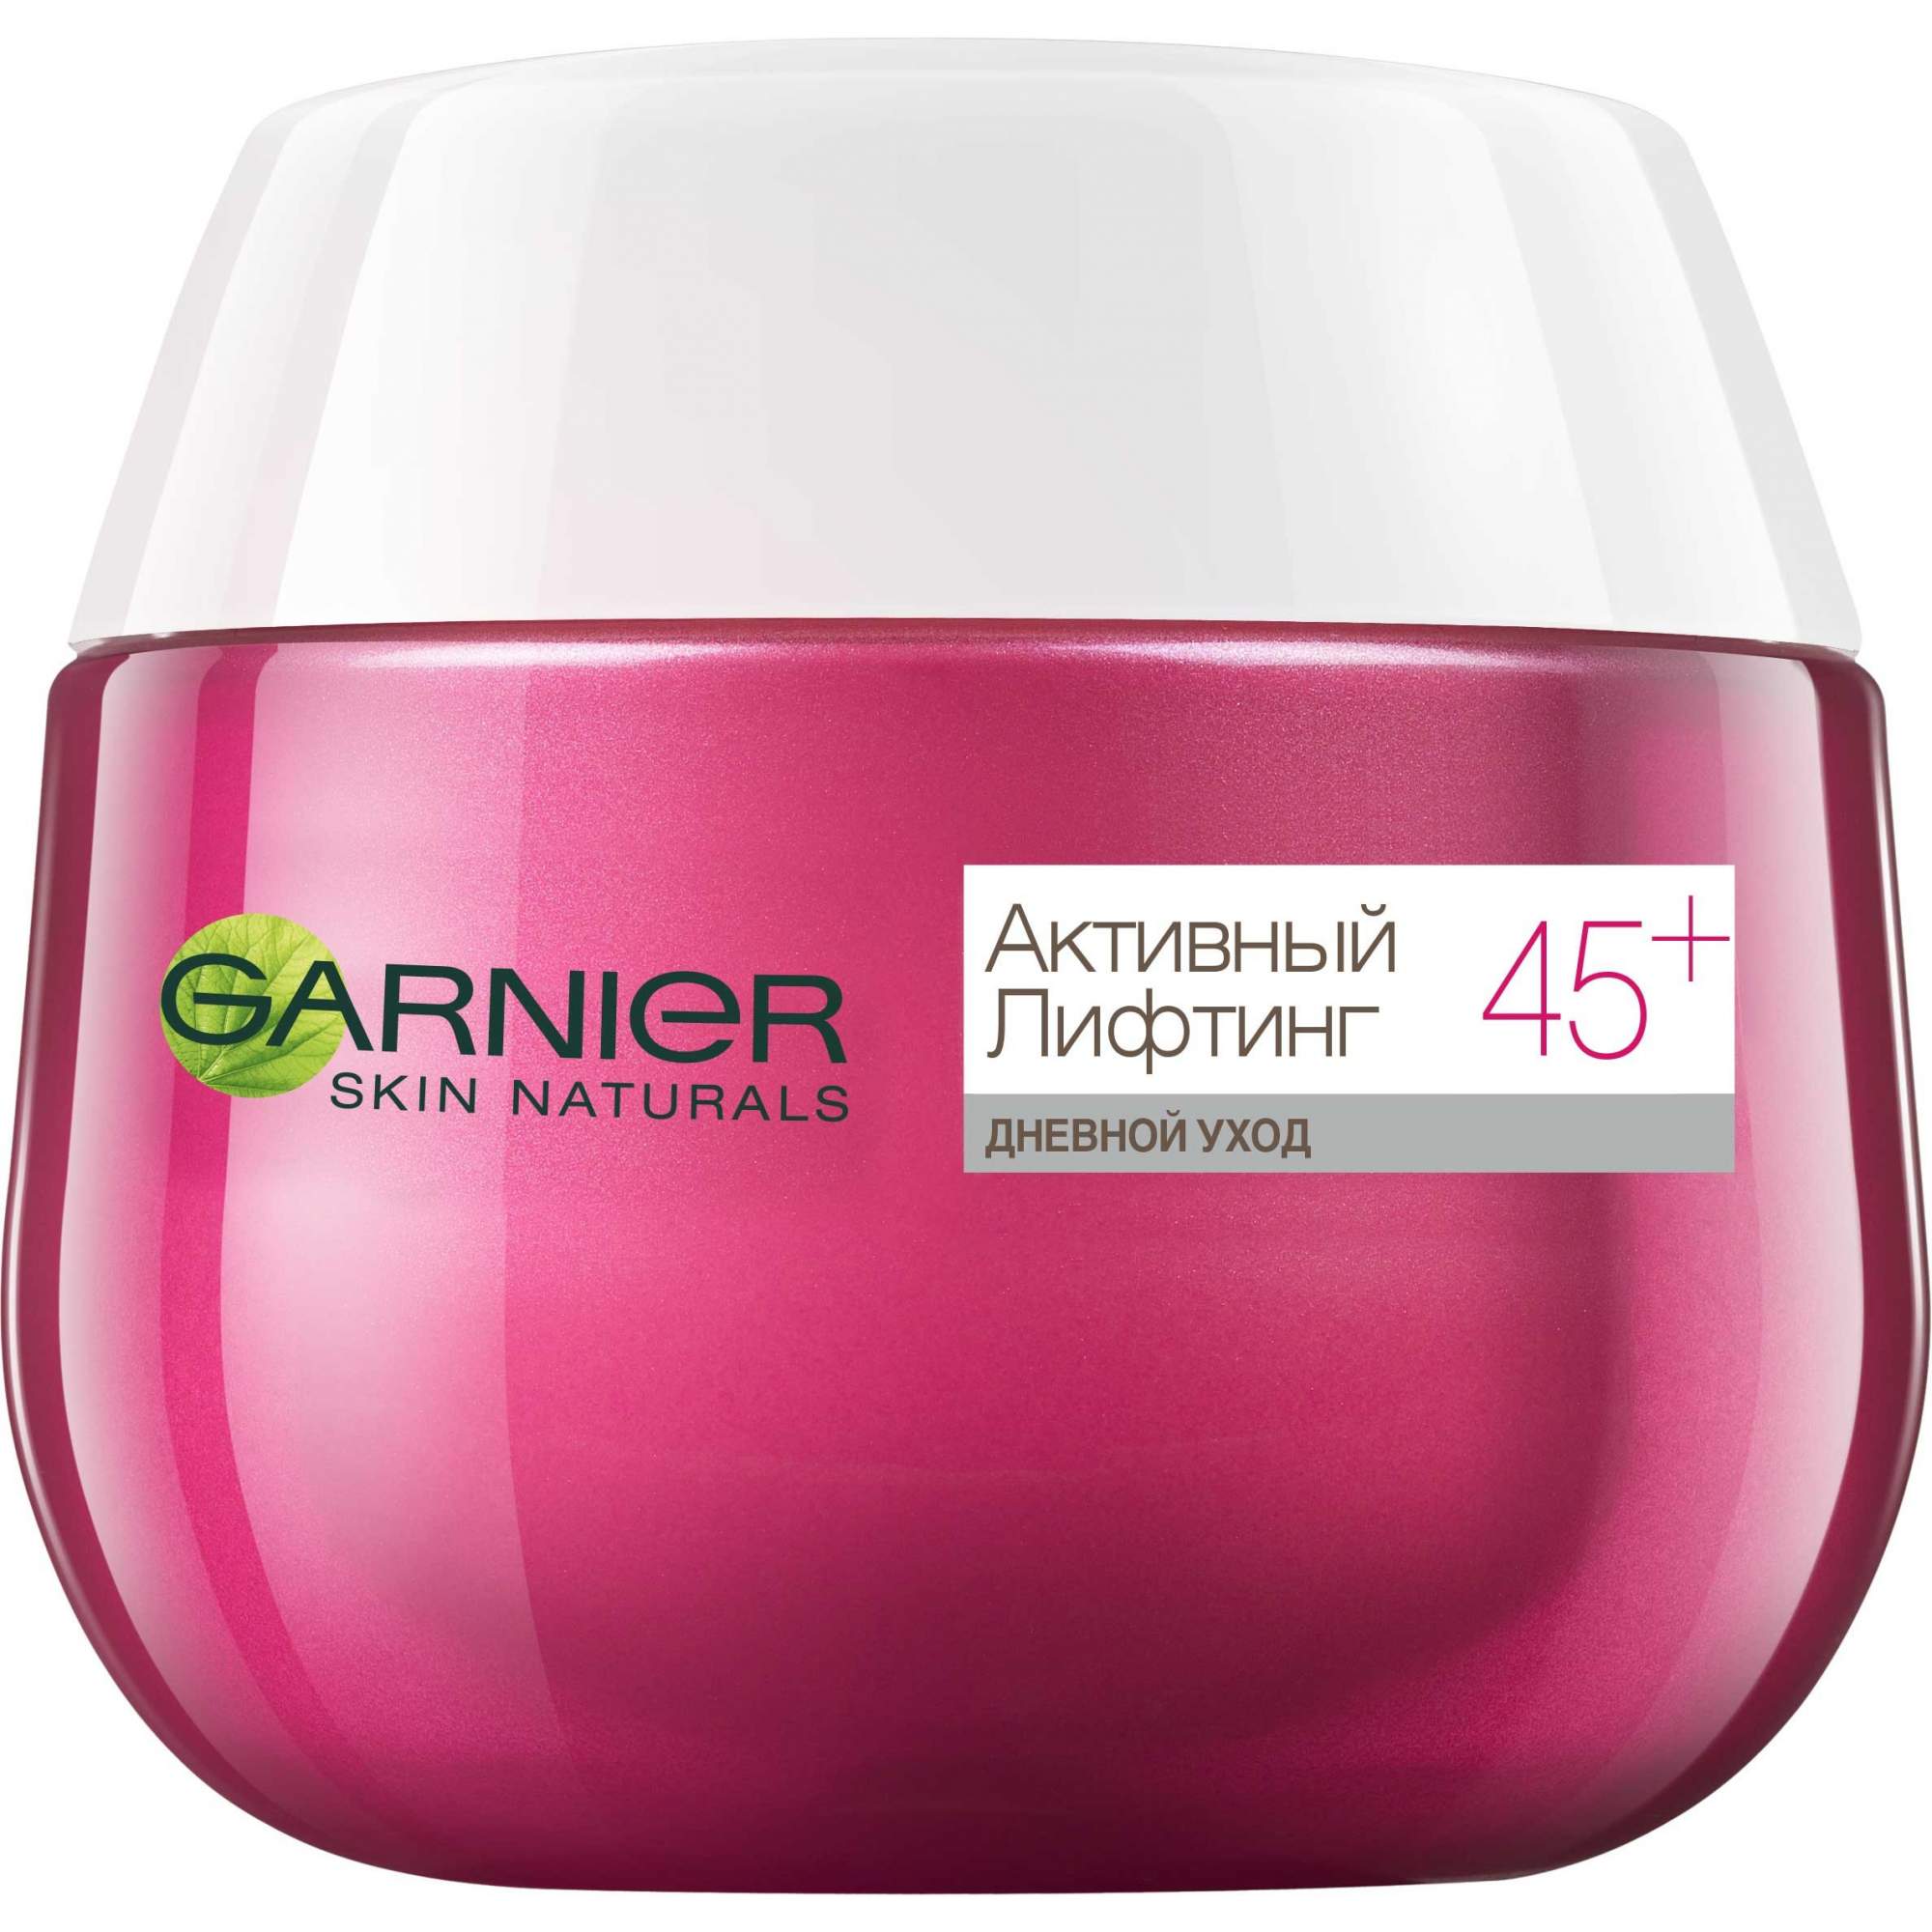 Крем для лица Garnier Skin Naturals Активный лифтинг 45+ 50 мл